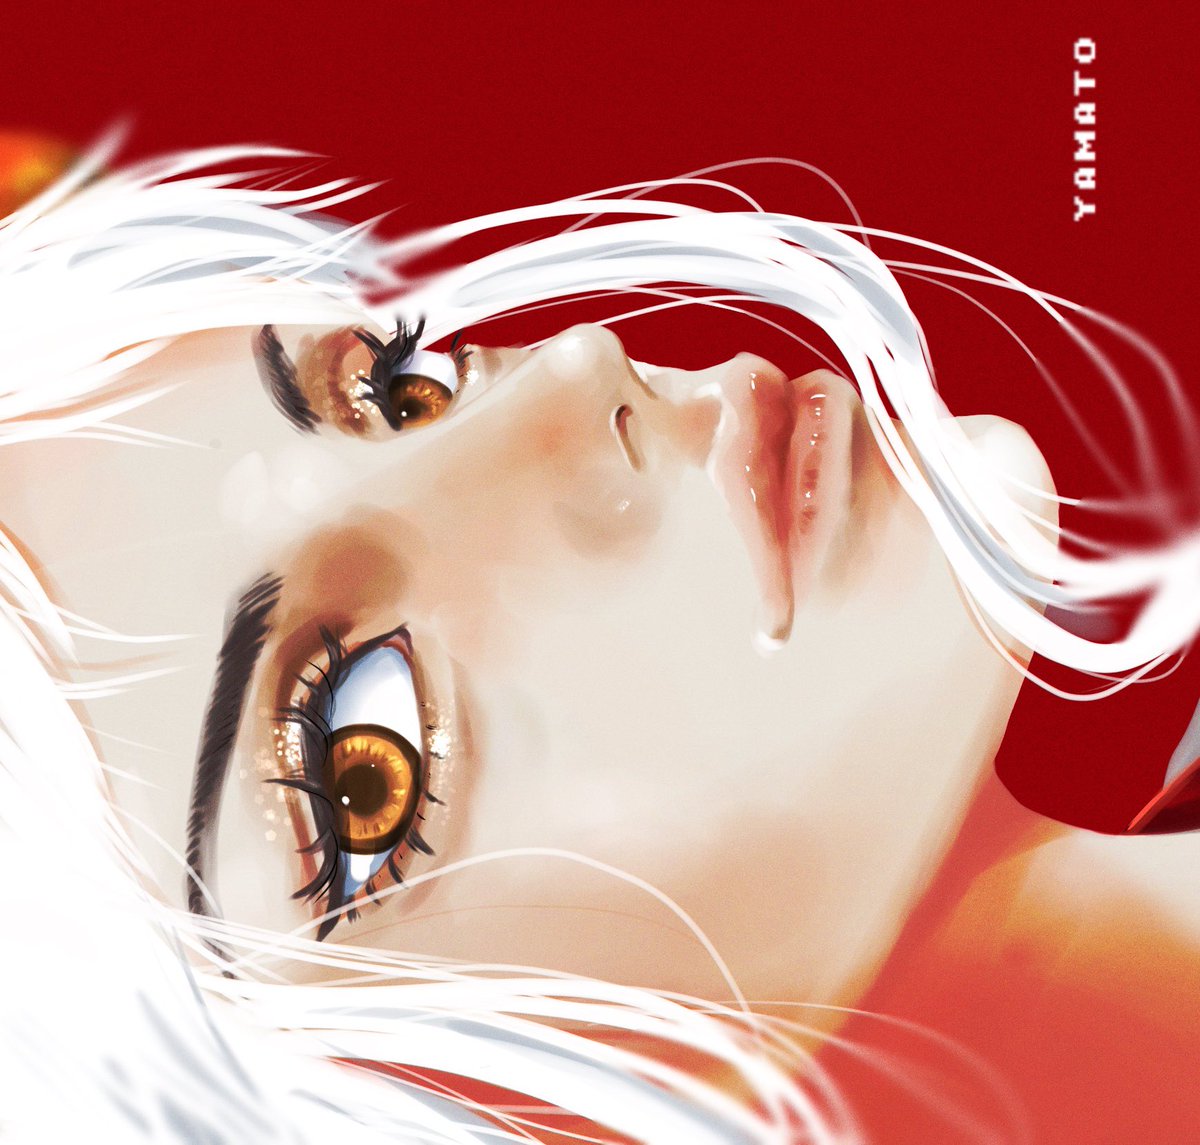 1girl solo white hair red background lips eyelashes sideways  illustration images